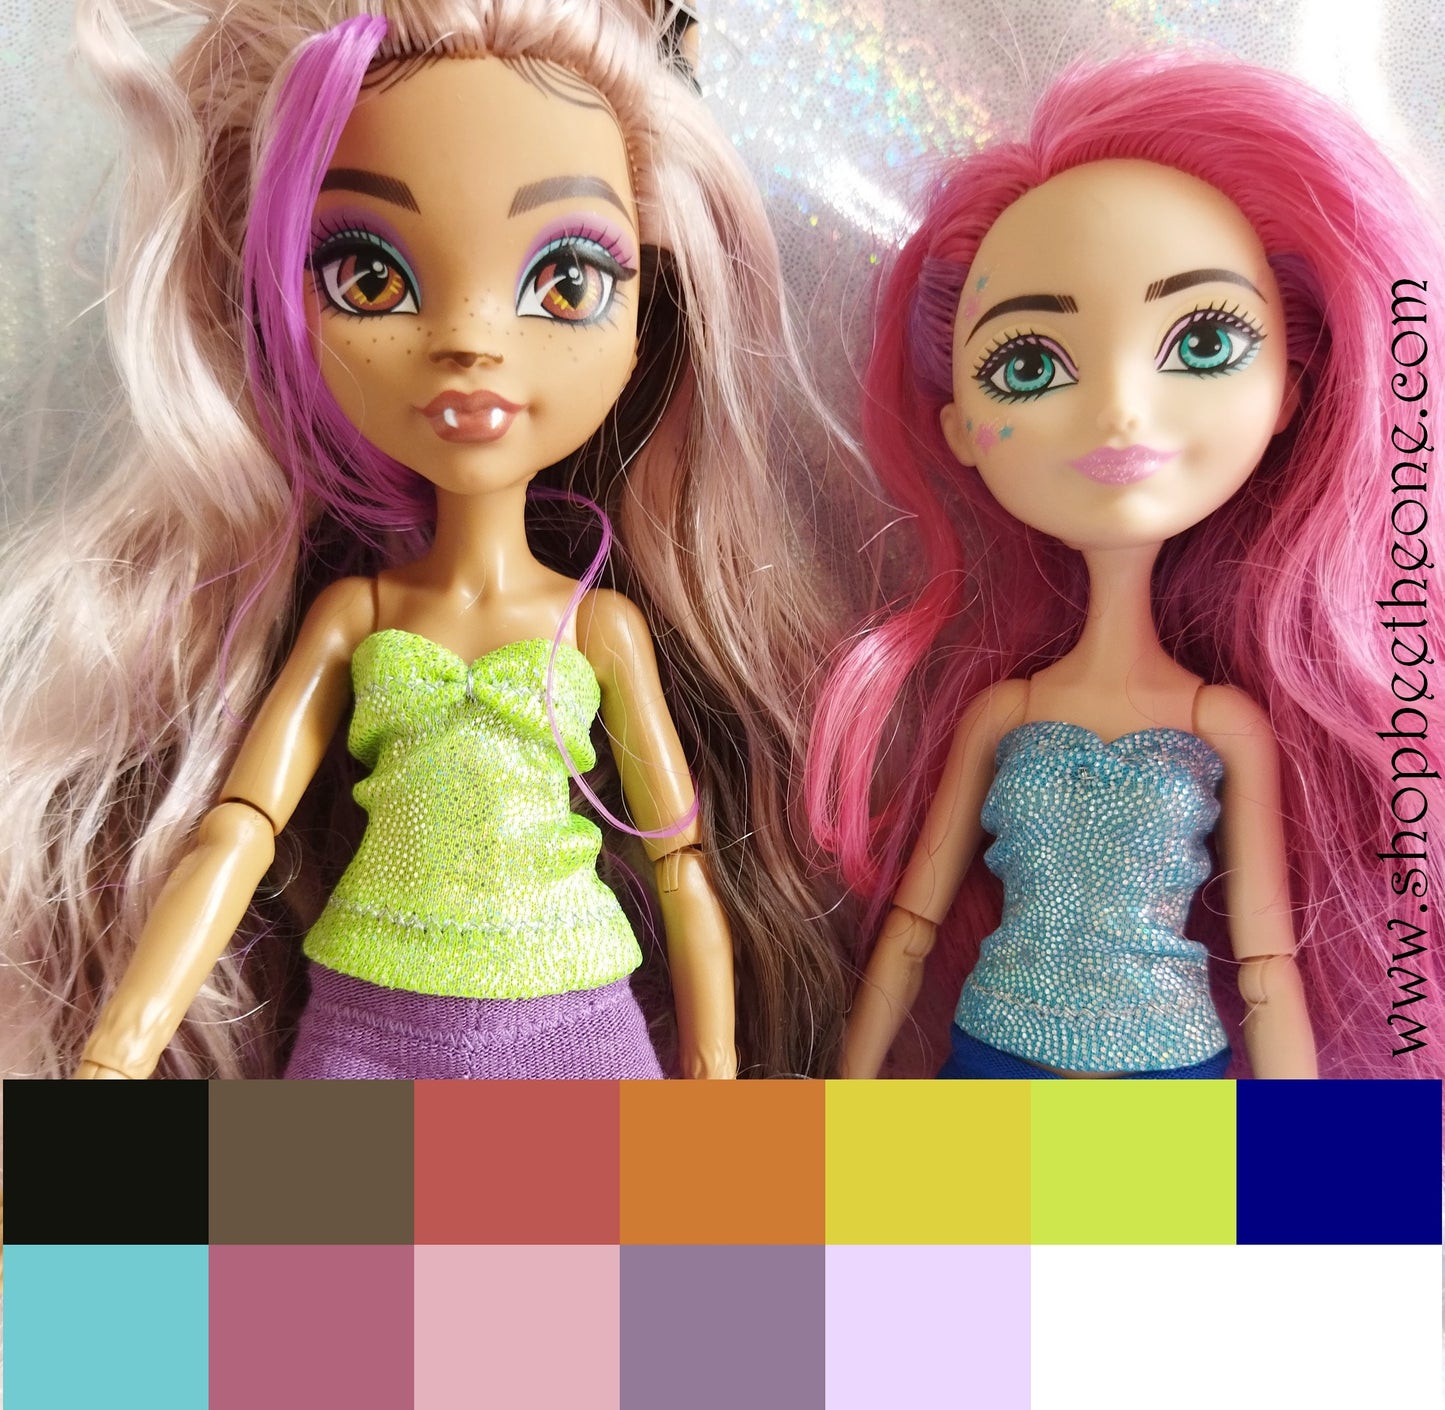 Bustier Sirène imprimé holographique pour poupées Monster High/Ever After High/Hairmazing/Winx Club (Mattel) - 12 coloris - Collection Basics - par Bee the One